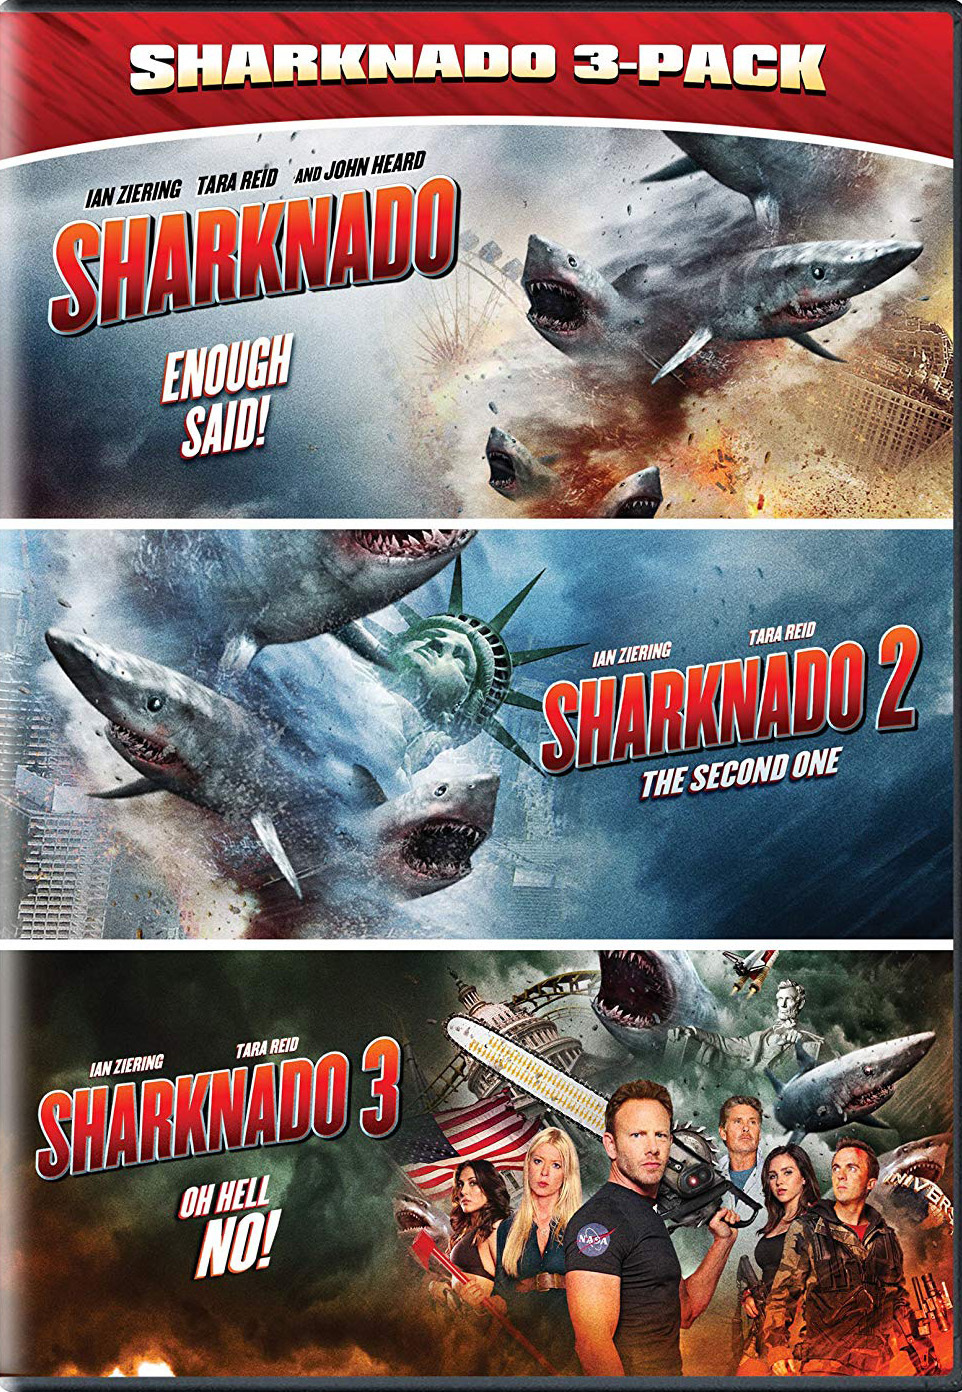 Sharknado 3-Pack